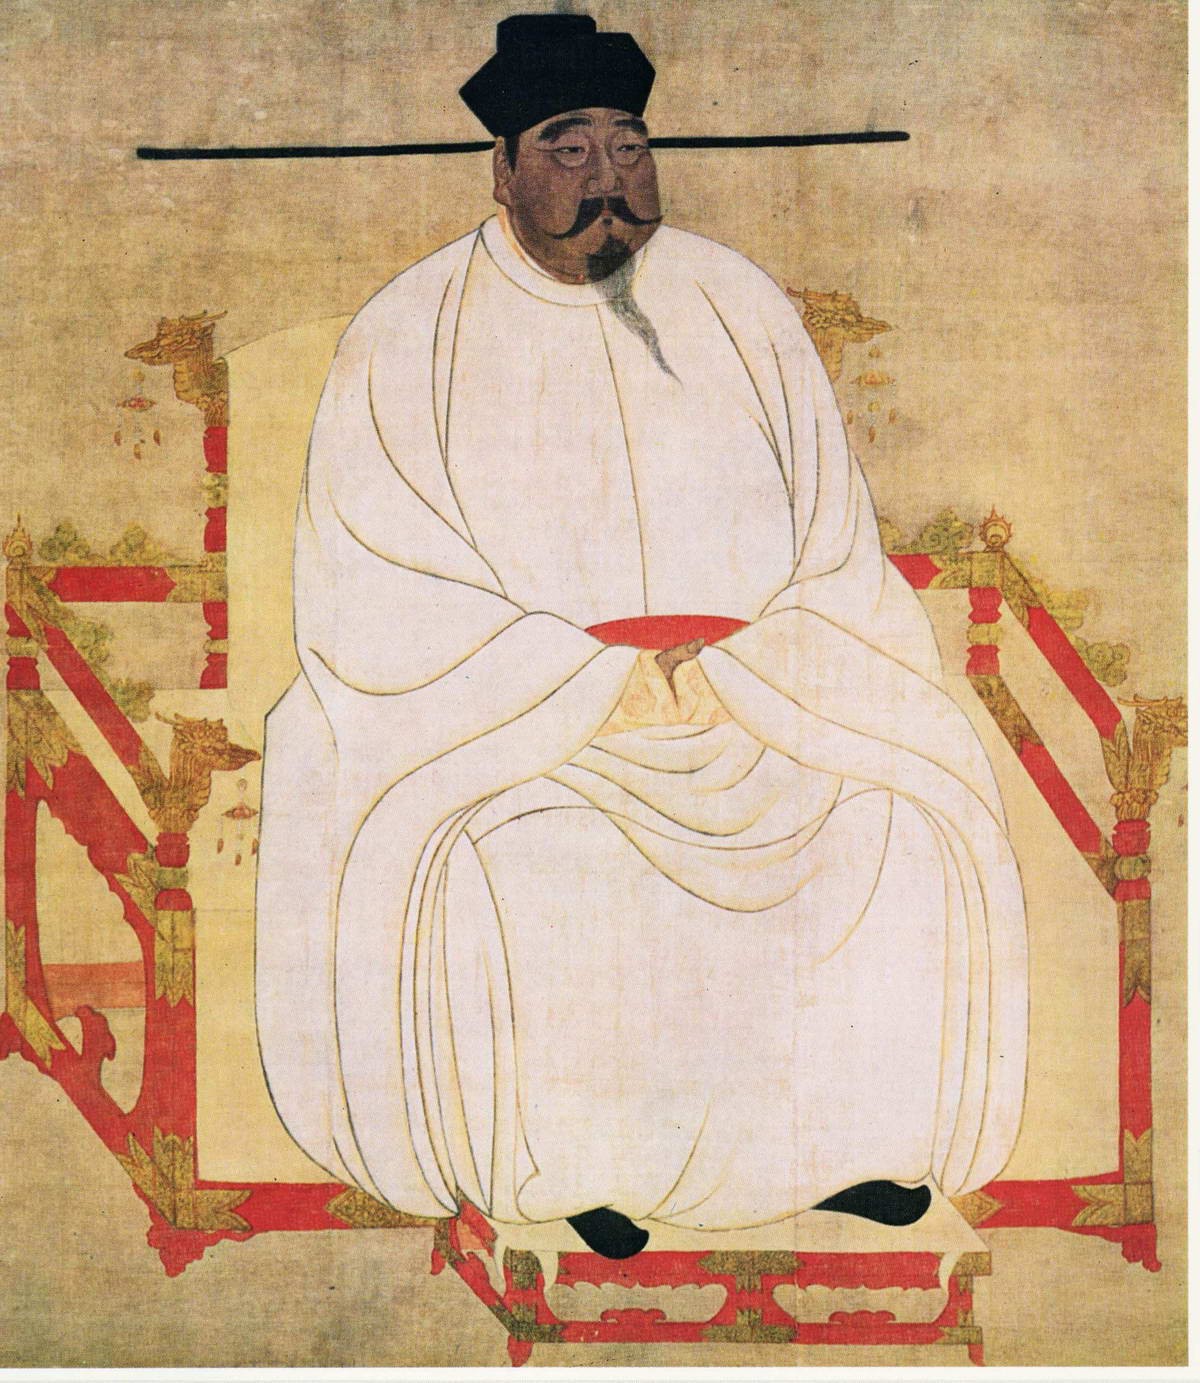 宋太祖赵匡胤画像 现存于台北故宫博物院